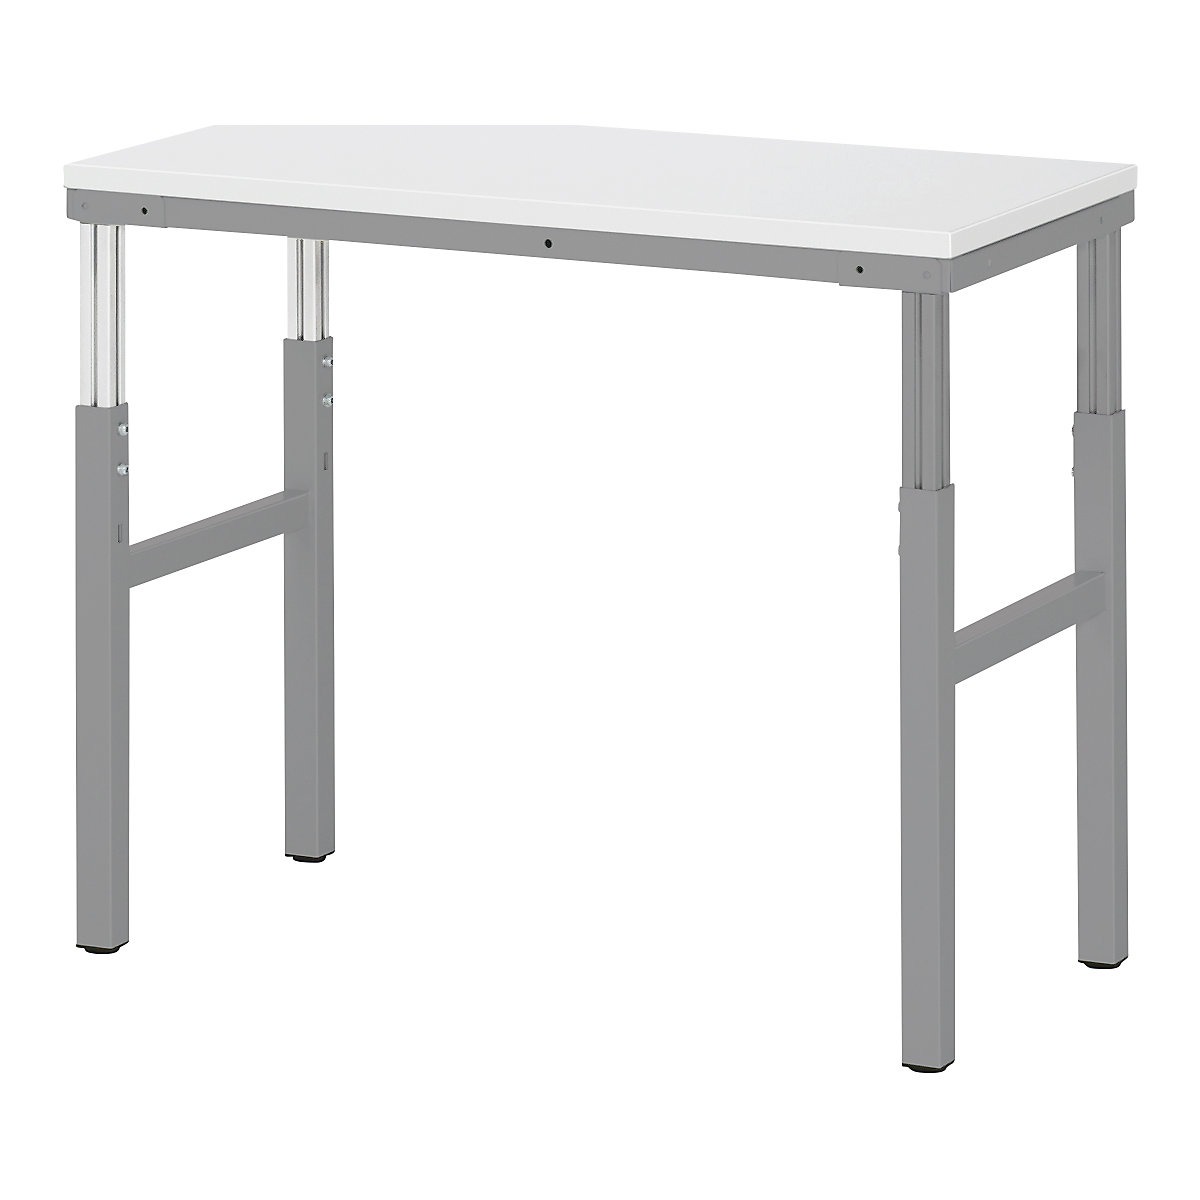 Pracovní stůl ESD – RAU, rozsah přestavování výšky 650 – 1000 mm, š x h 1000 x 500 mm